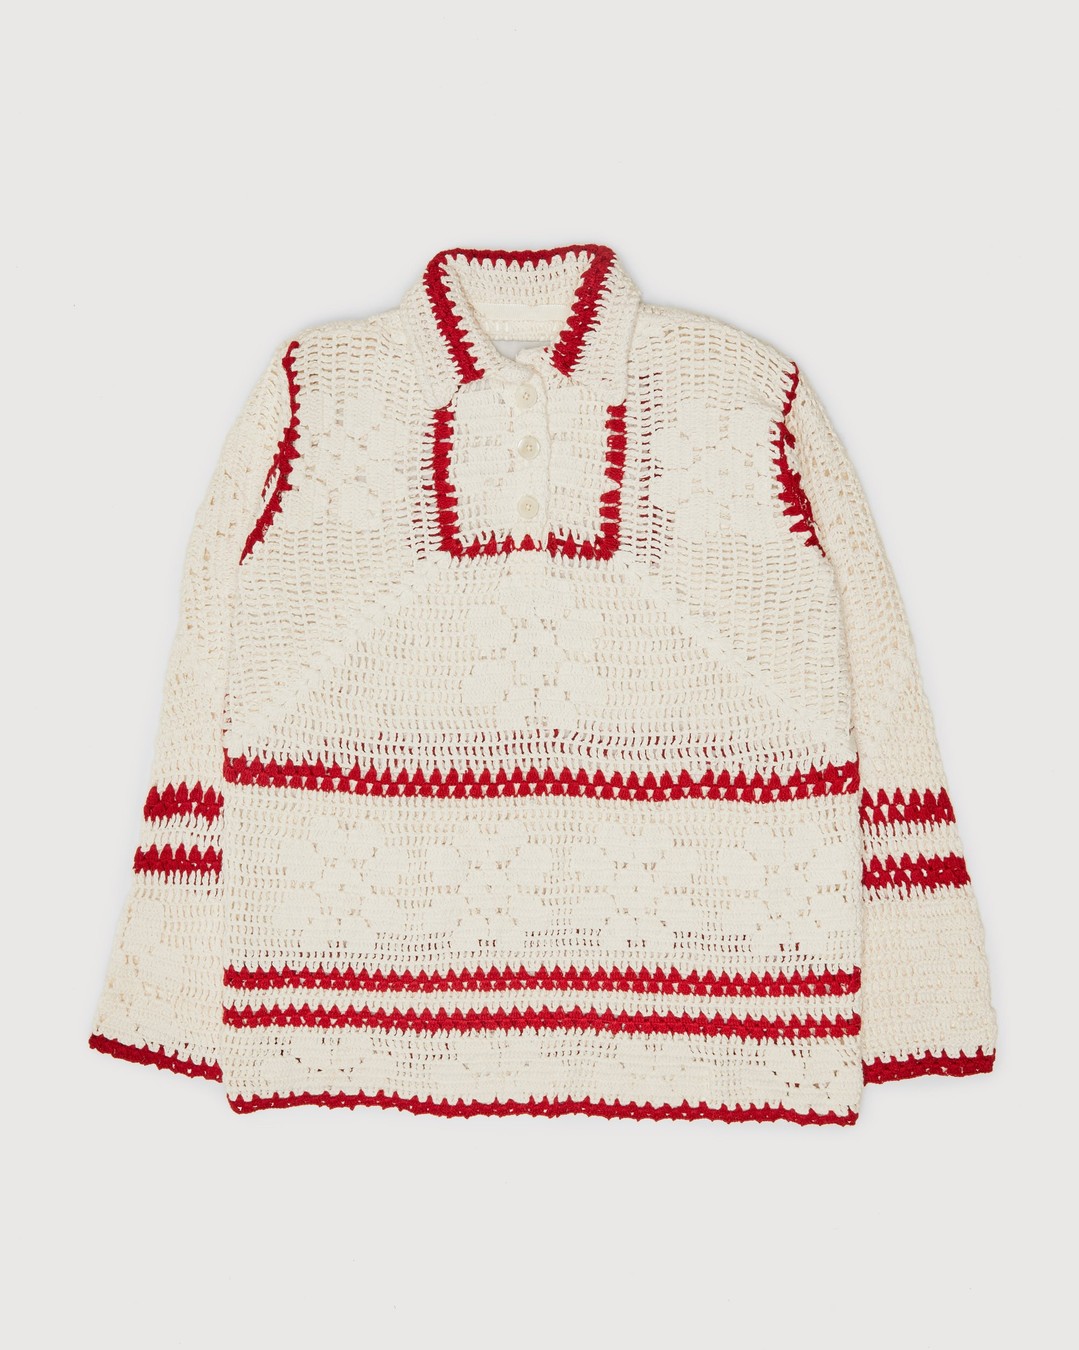 bode – Mockneck Crochet Pullover White Red - Sweats - Beige - Image 1